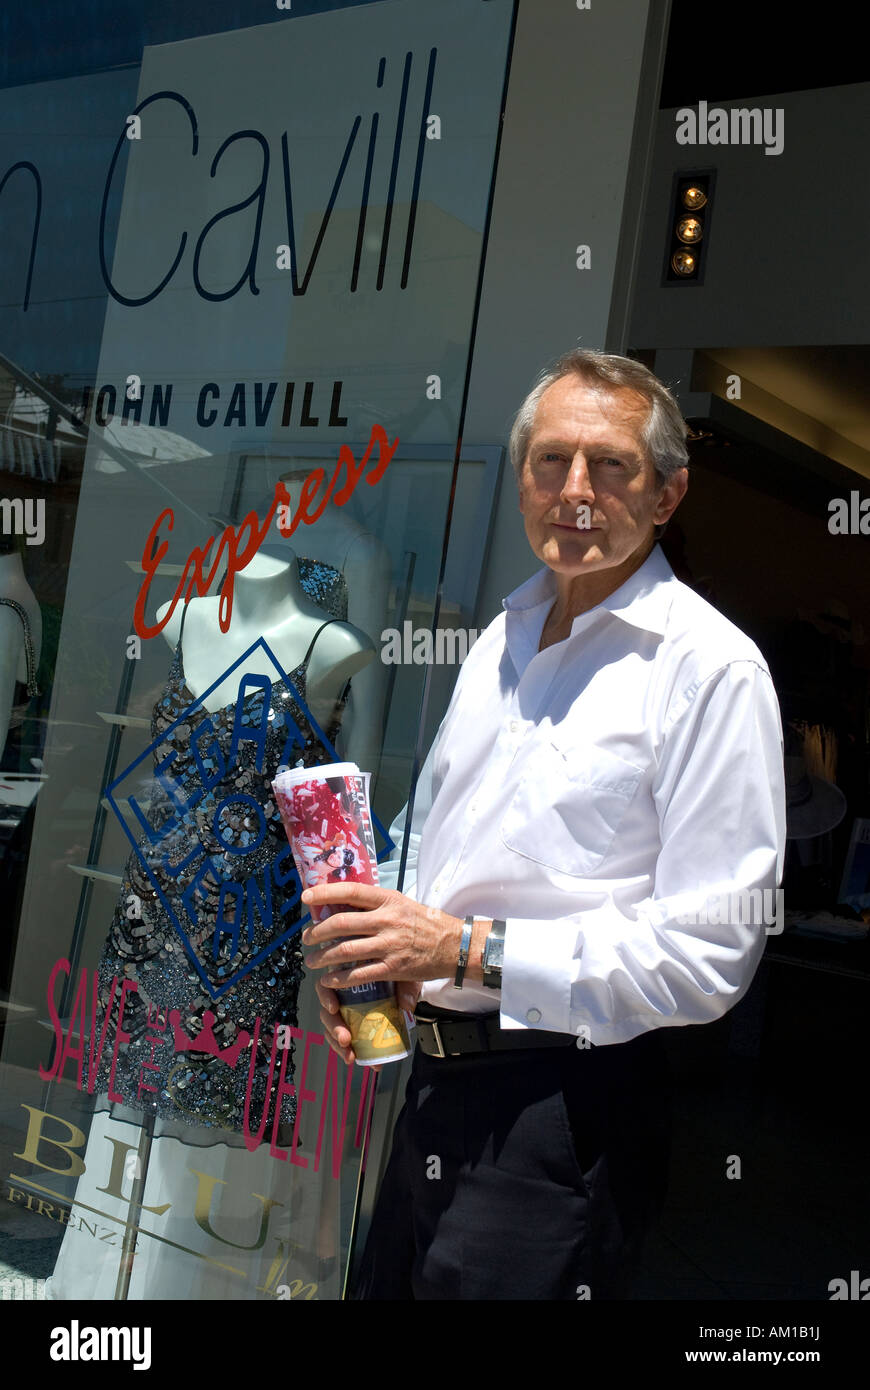 Fashion designer John Cavill in front of his shop, Melbourne Victoria, Australia Stock Photo